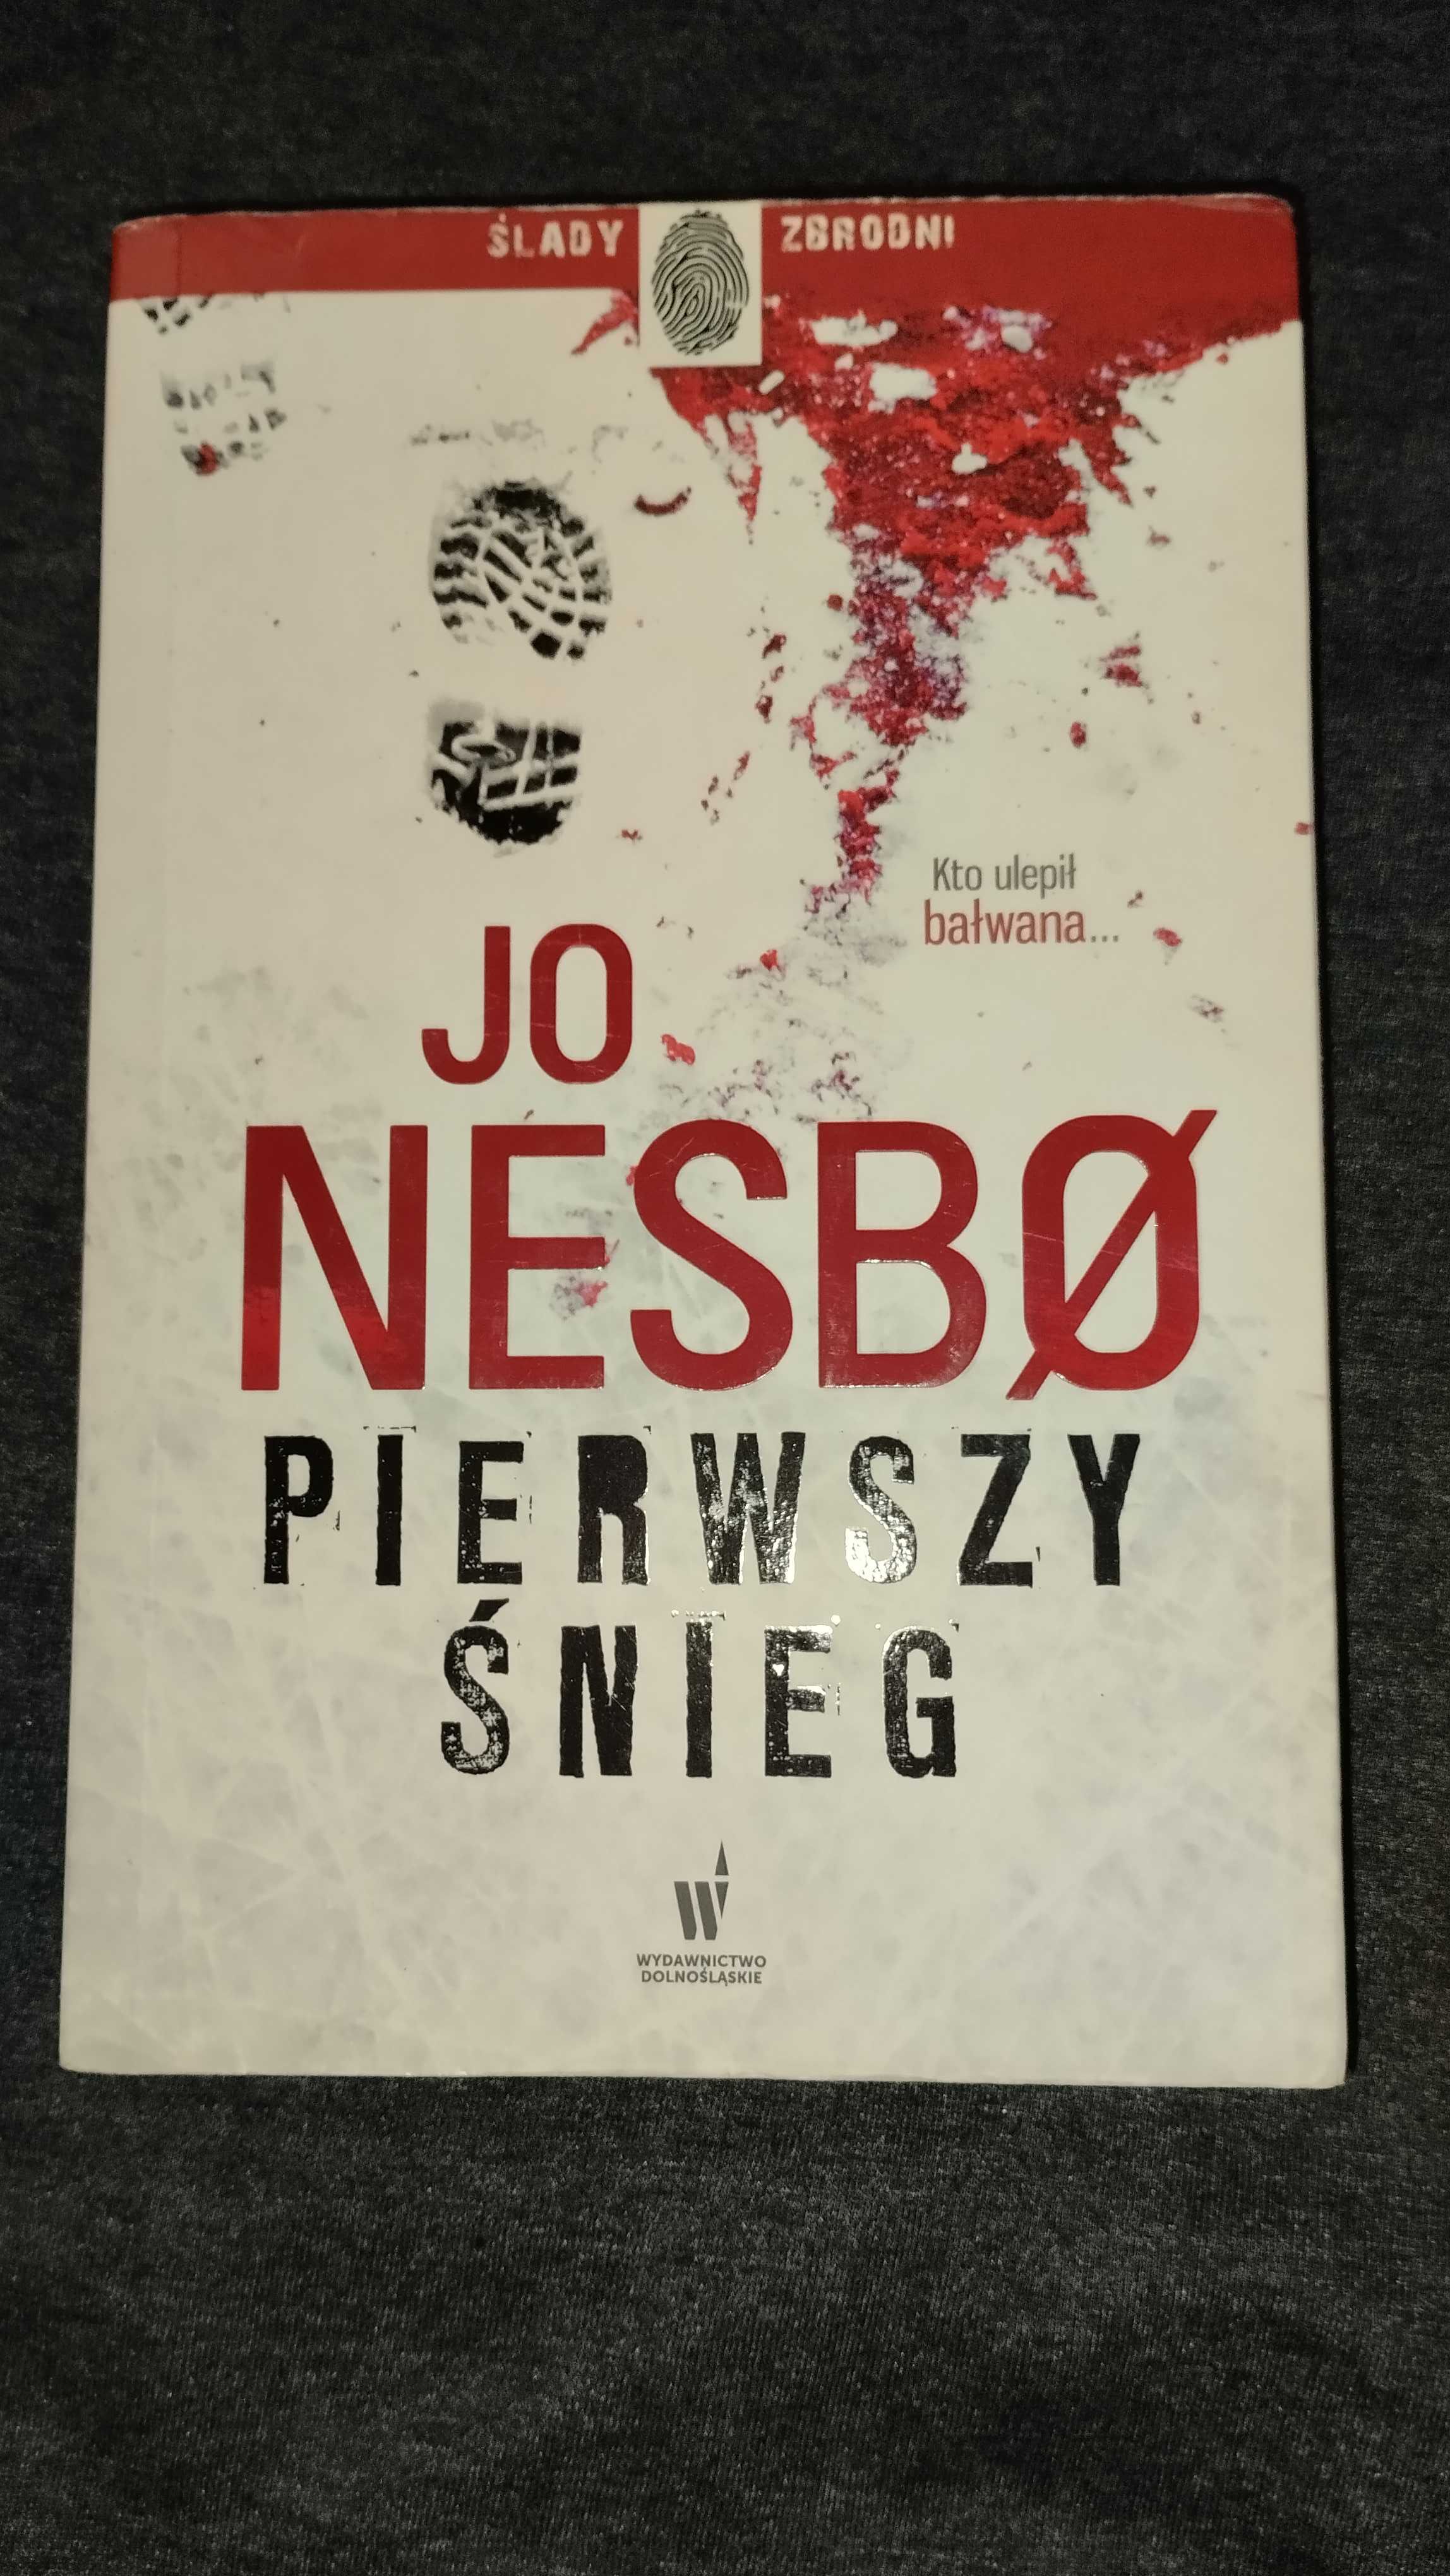 Jo Nesbo - "Pierwszy Śnieg"